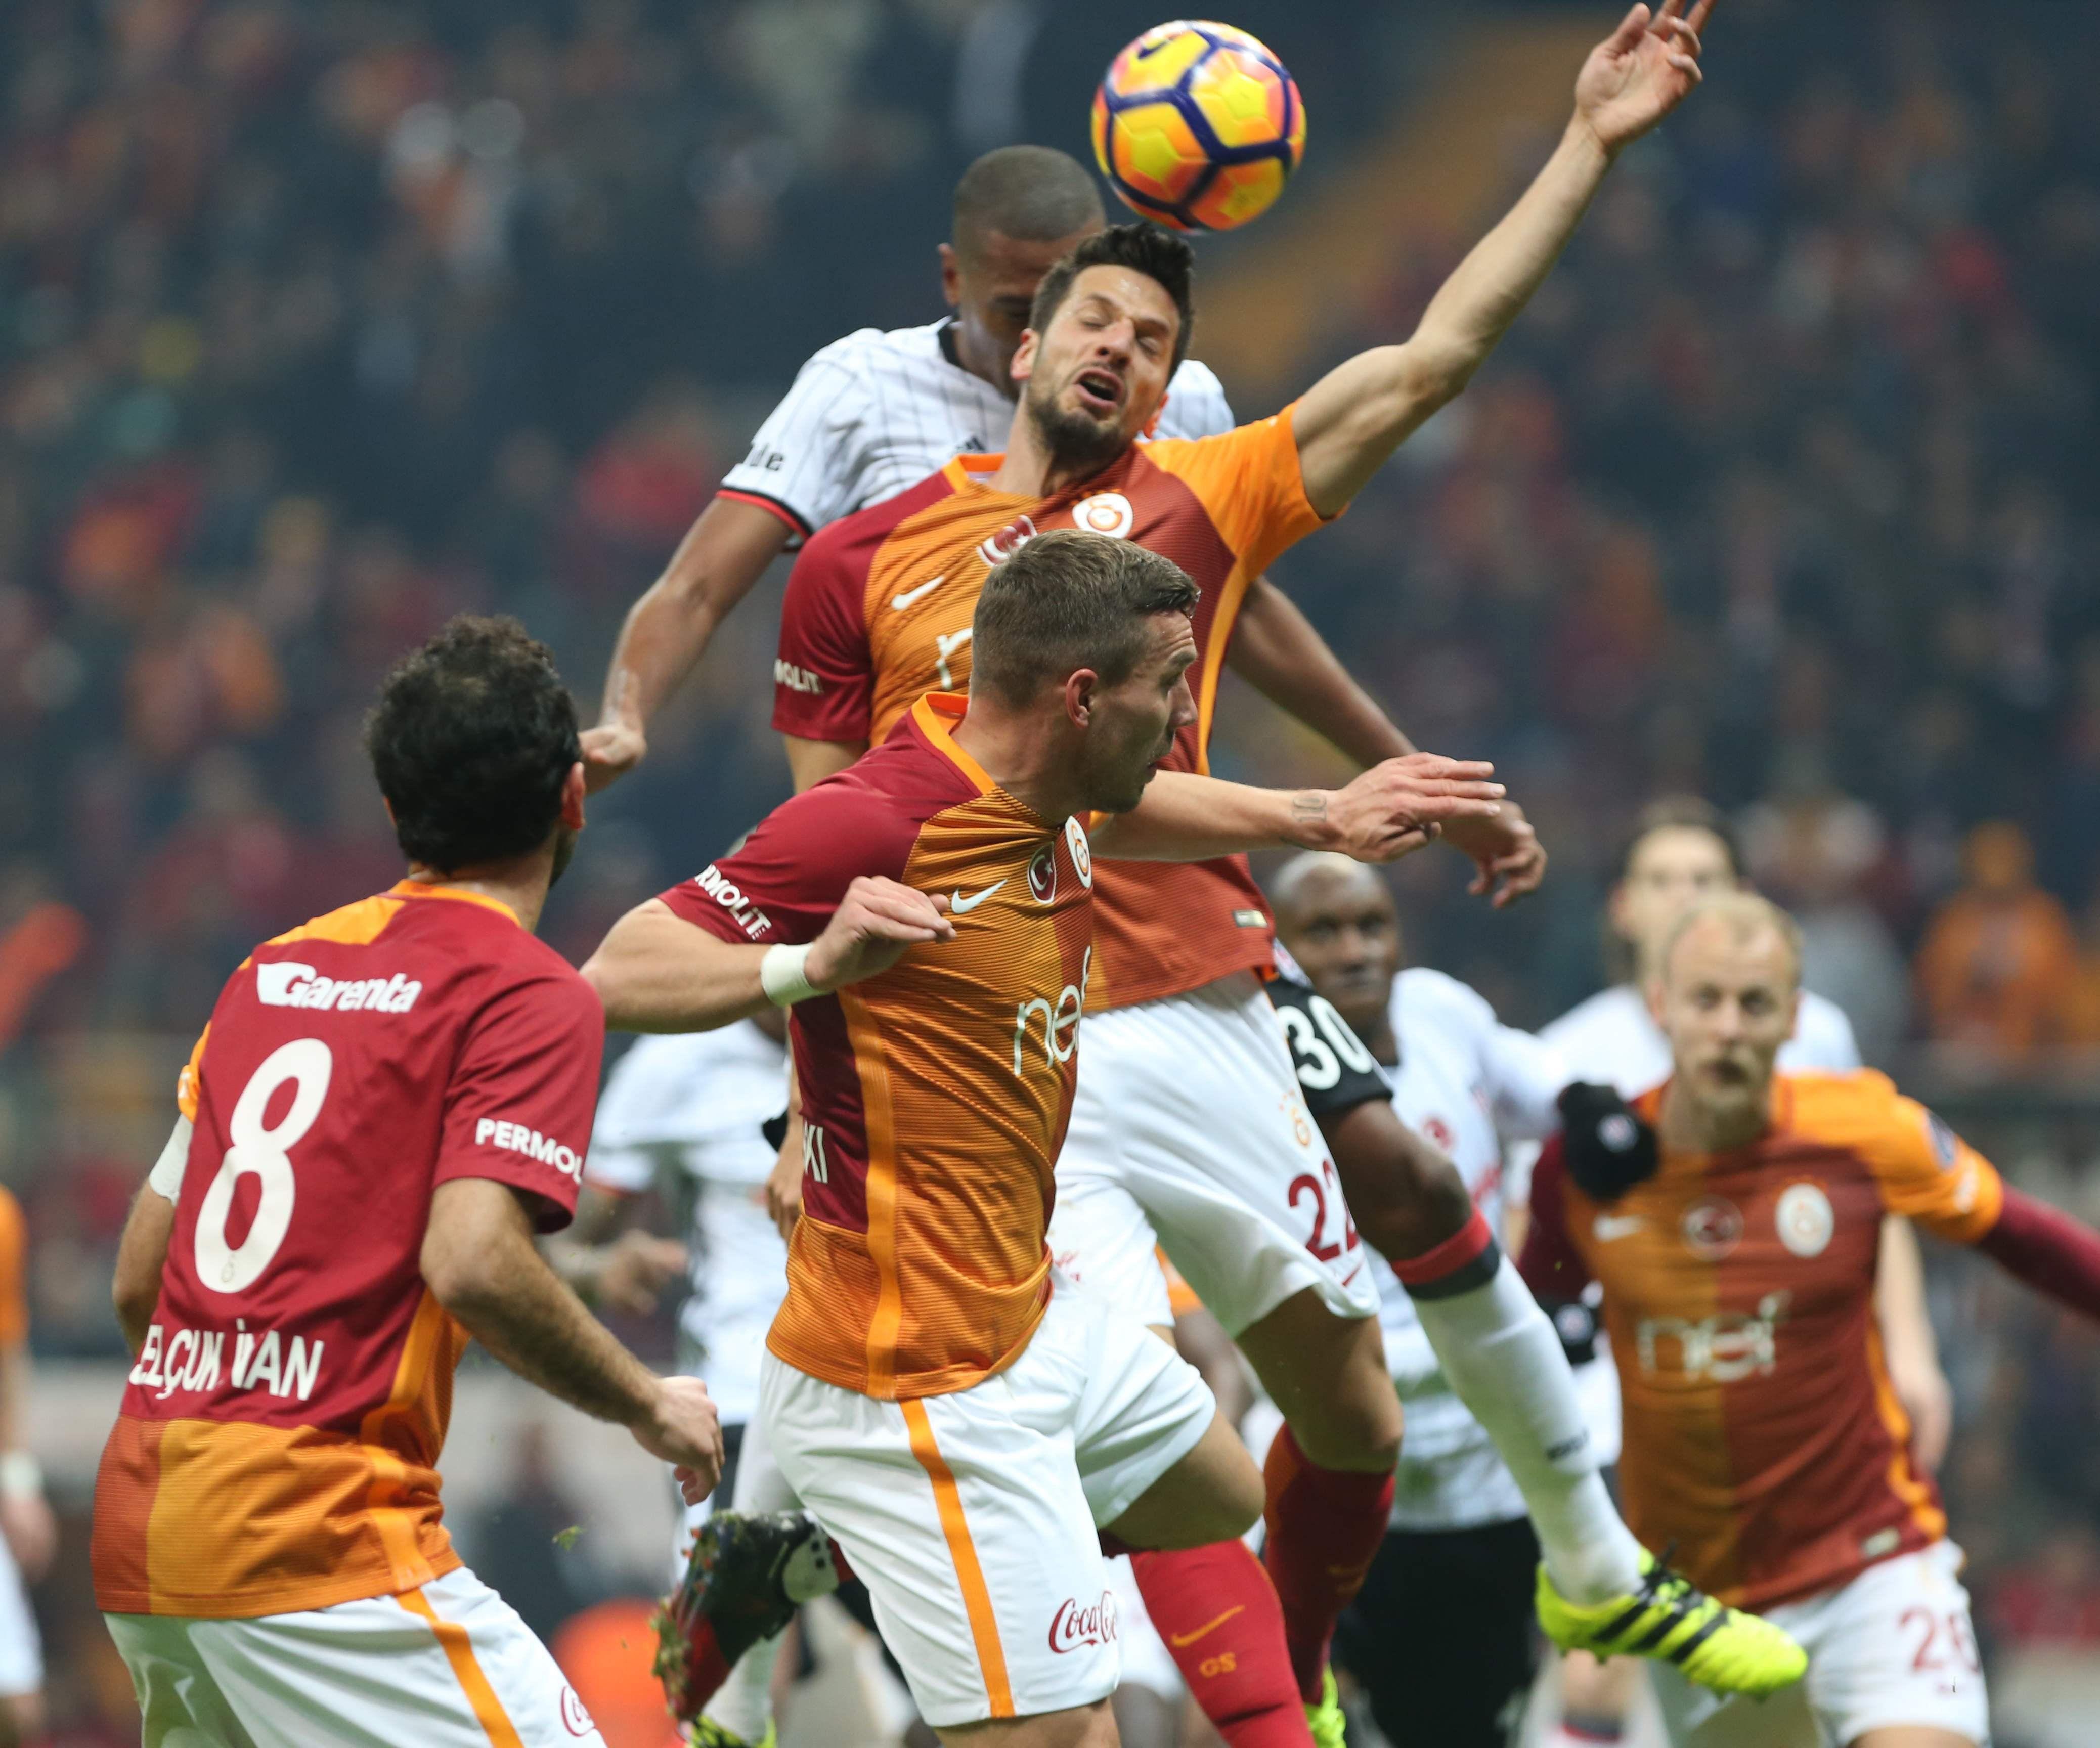 (ÖZET) Galatasaray - Beşiktaş maç sonucu: 0-1